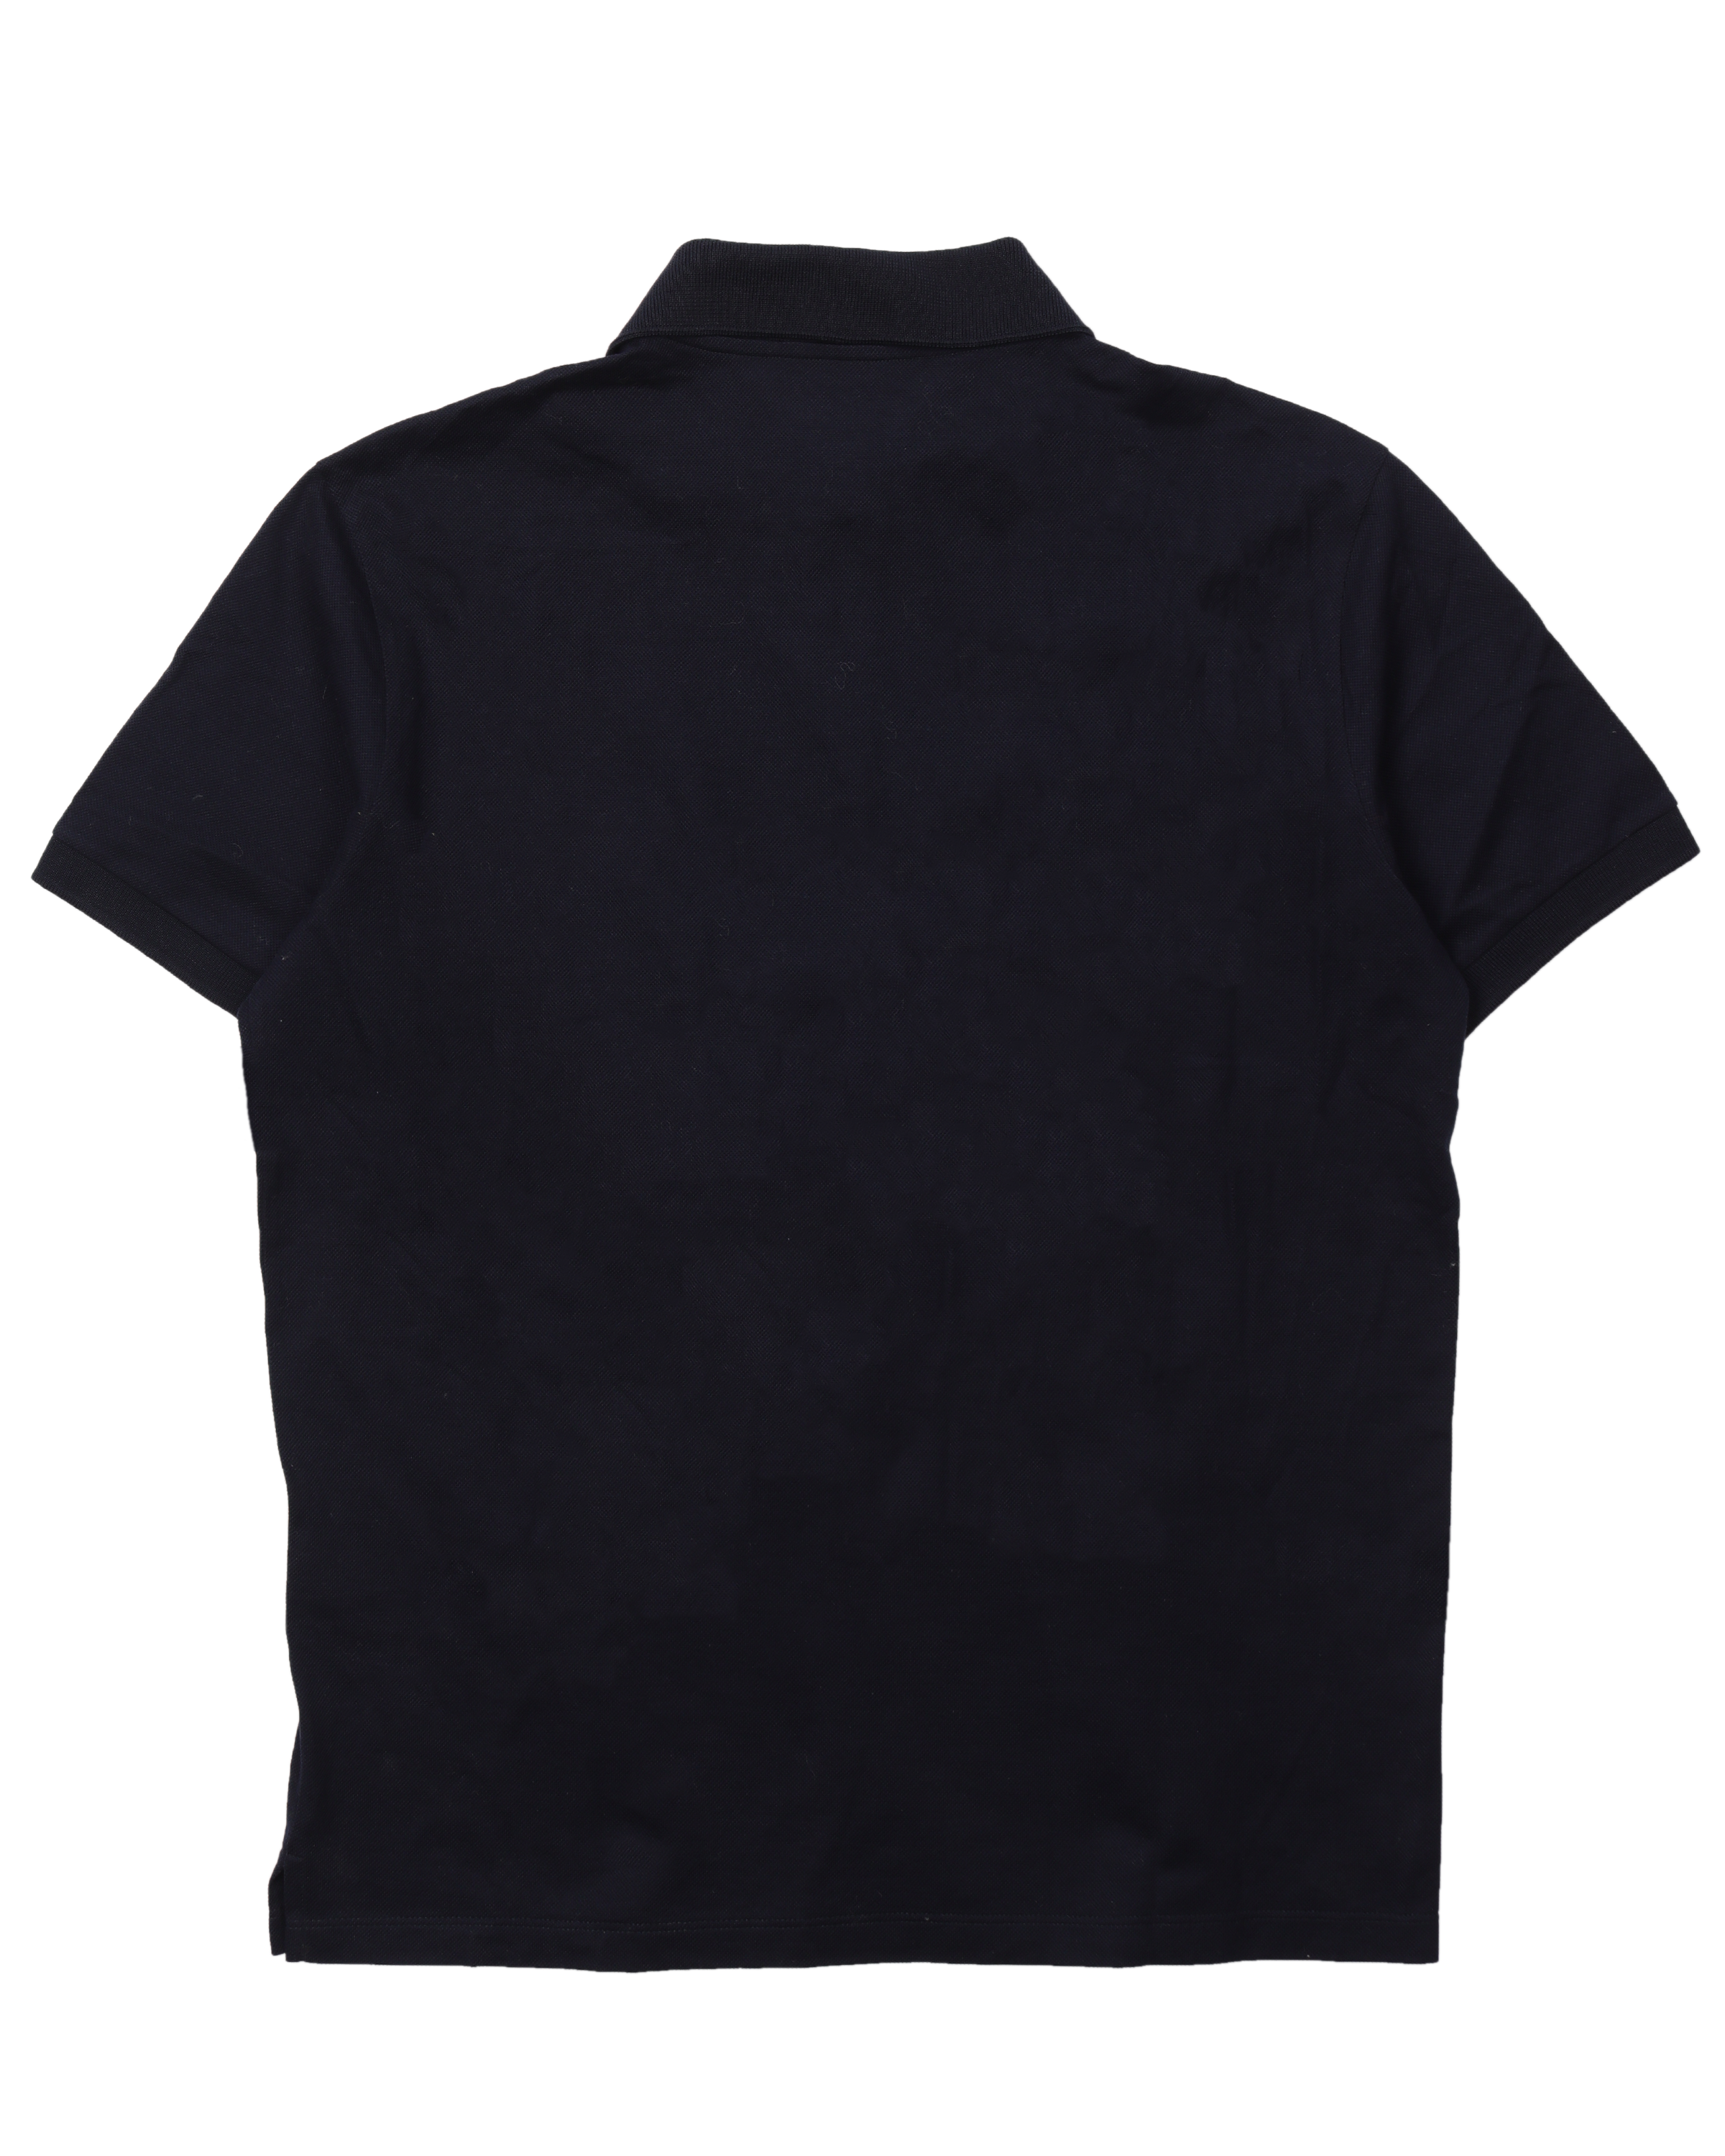 Louis Vuitton Men's Navy Cotton Chapman Giraffe Knit Collar Shirt